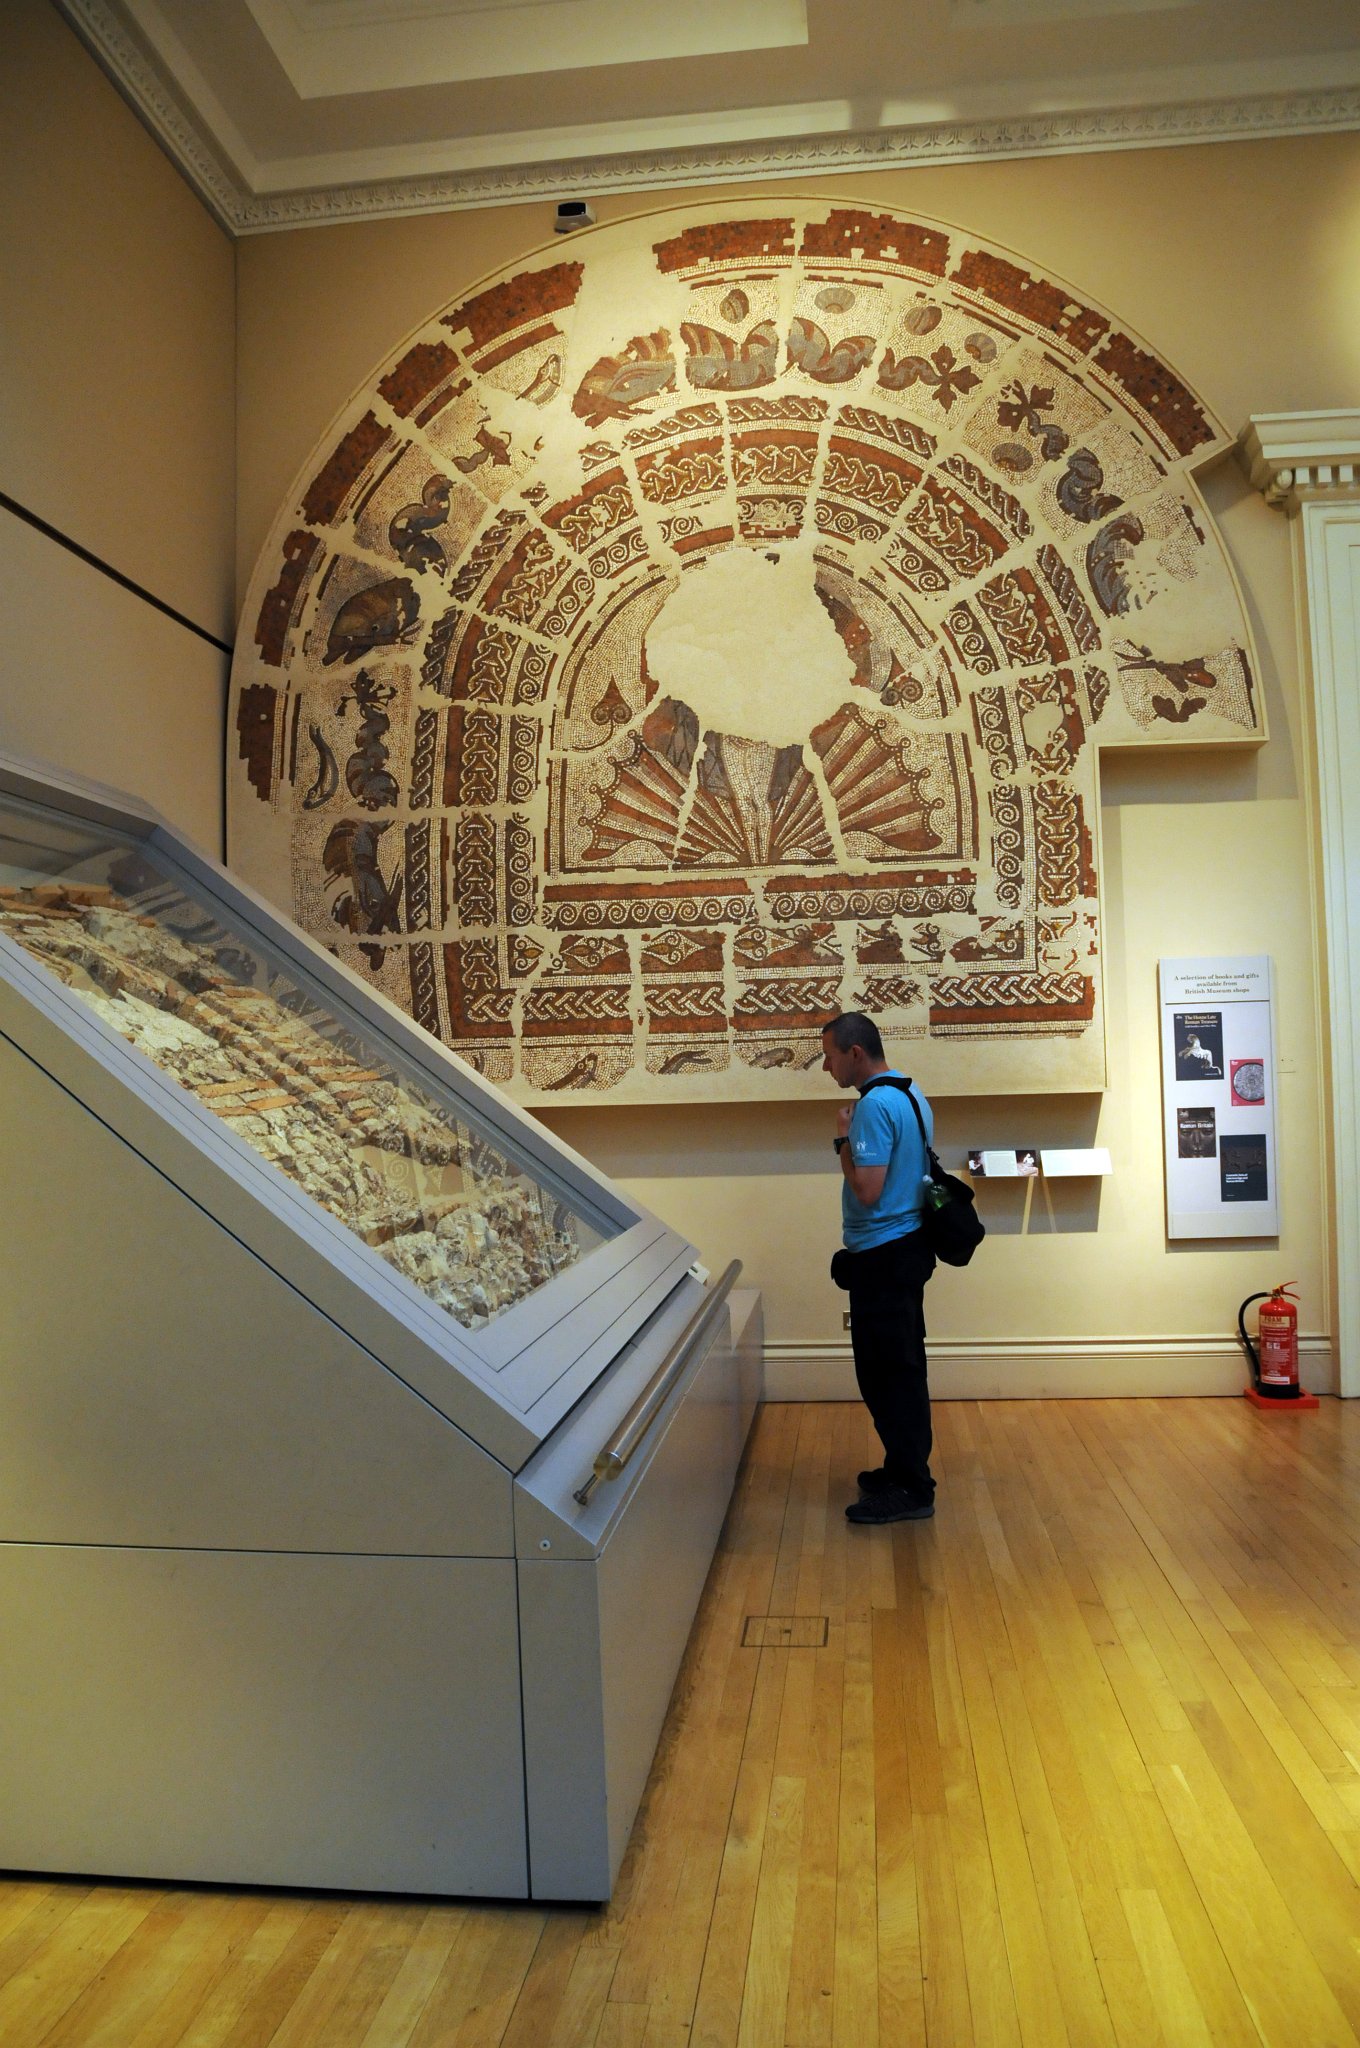 DSC_5833_2.jpg - Fili stojí před The Hemsworth Venus Mosaic (Venuše vystupující z moře stojící na lastuře je obklopena delfíny a mořskými živočichy) ze 4. století našeho letopočtu v British muzeu. Hemsworth našel mozaiku v roce 1831, byla instalována jako podlaha v přijímací místnosti, ale teprve v roce 1908 byla zachráněna. V tu dobu již byla značně poškozena. Pečlivým čištěním byly obnoveny i barevné pasáže.